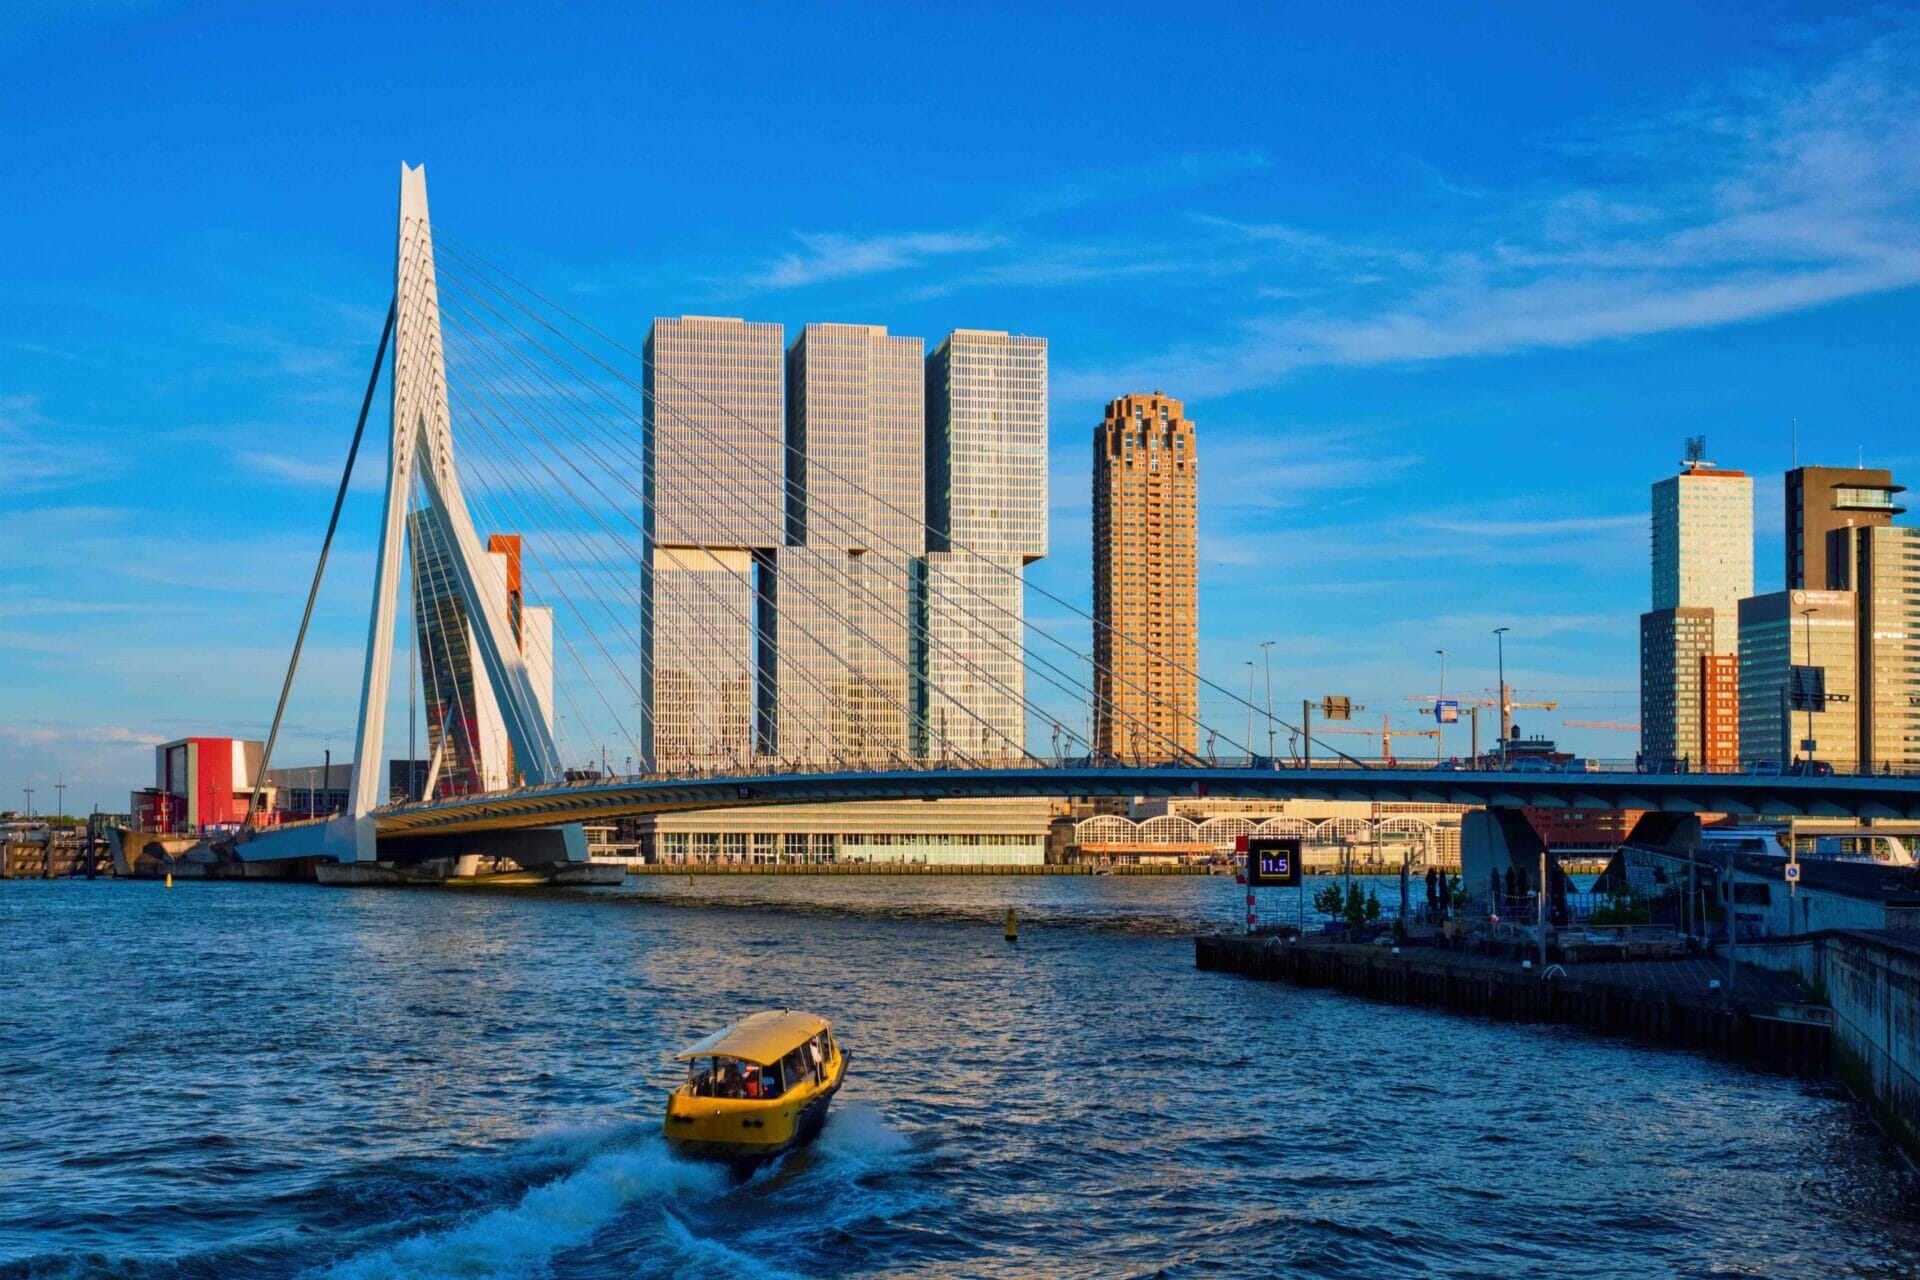 Travel to Rotterdam